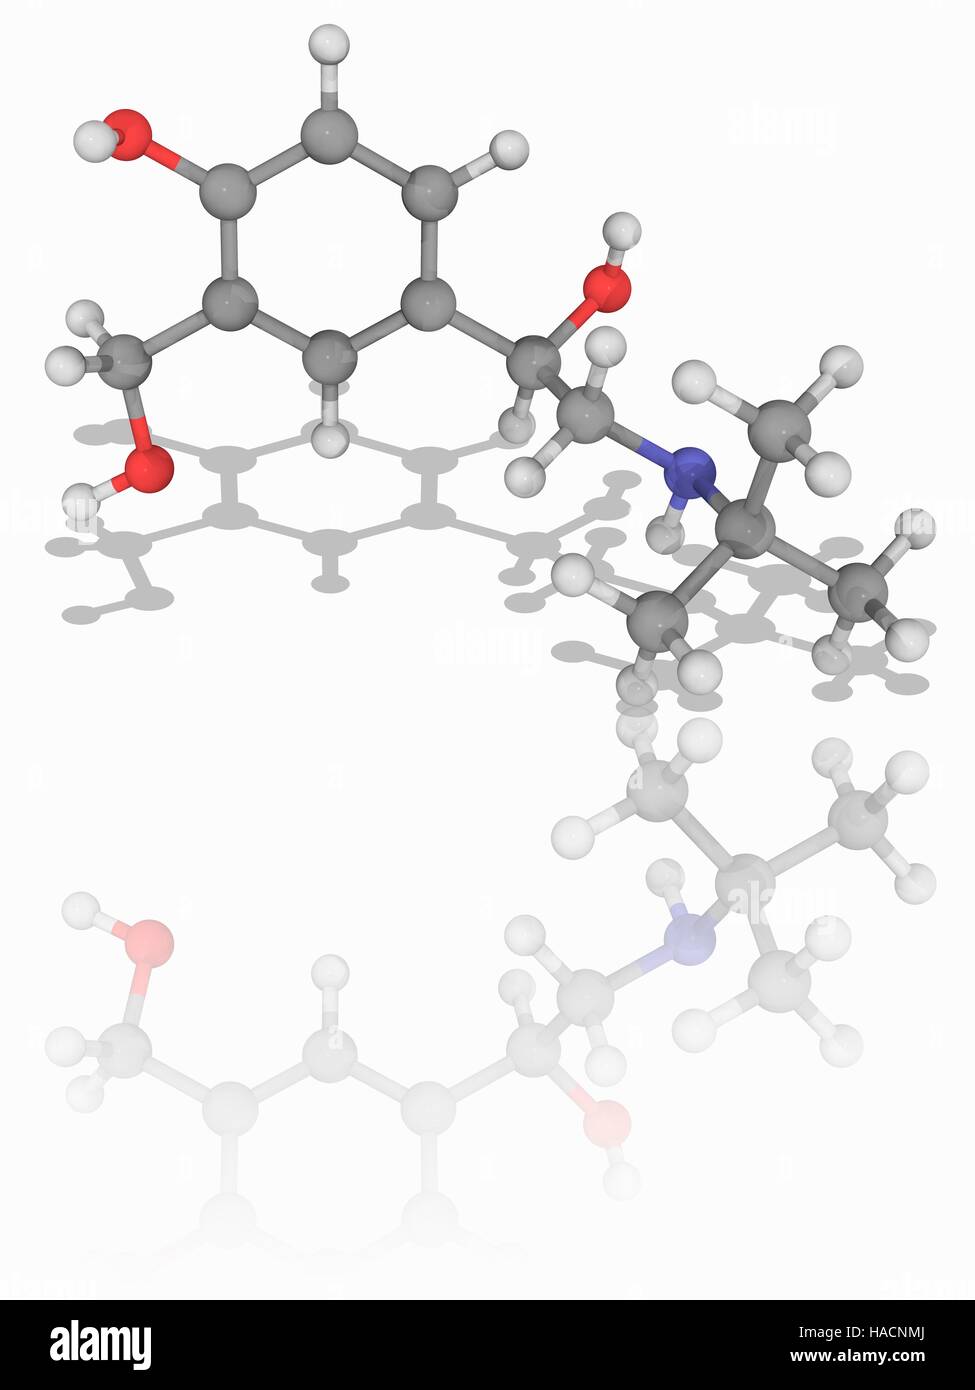 Salbutamol. Molekulares Modell des Medikament Salbutamol (C13. H21. N.O3), auch bekannt als Albuterol, ein kurzwirksames beta2-adrenergen Rezeptor Agonist für Asthma und chronisch obstruktive Lungenerkrankung (COPD) eingesetzt. Atome als Kugeln dargestellt werden und sind farblich gekennzeichnet: Kohlenstoff (grau), Wasserstoff (weiß), Stickstoff (blau) und Sauerstoff (rot). Abbildung. Stockfoto